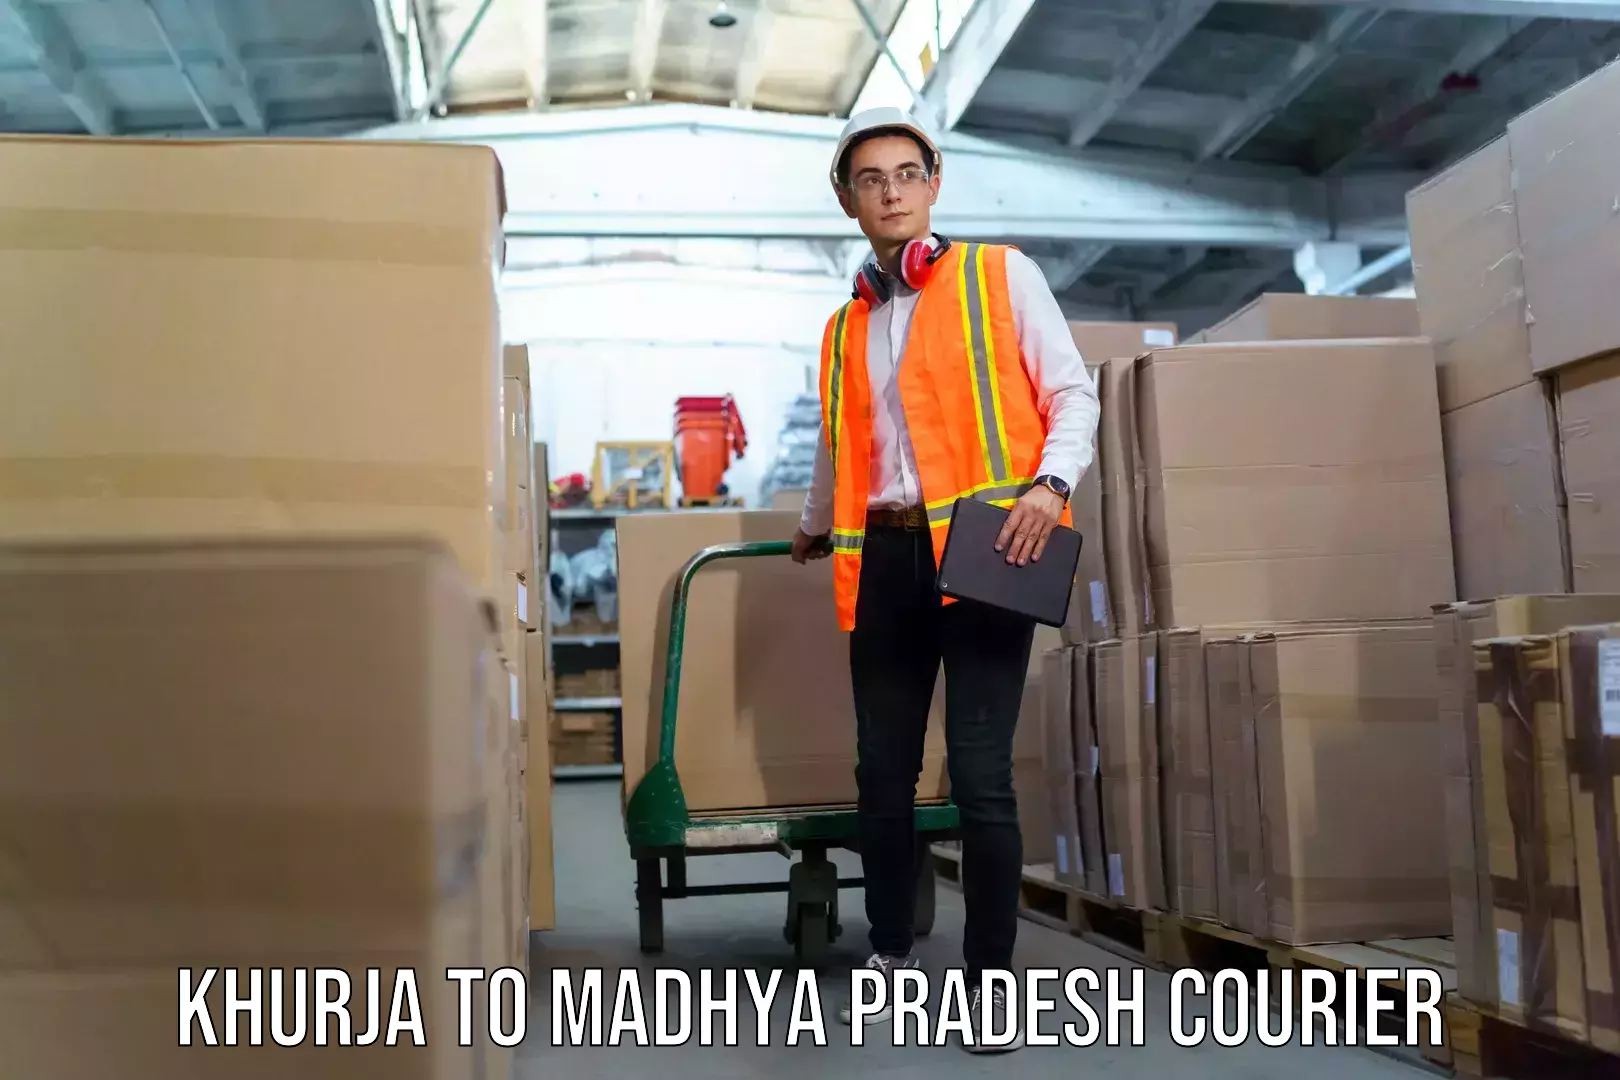 Luggage transport service Khurja to Madhya Pradesh